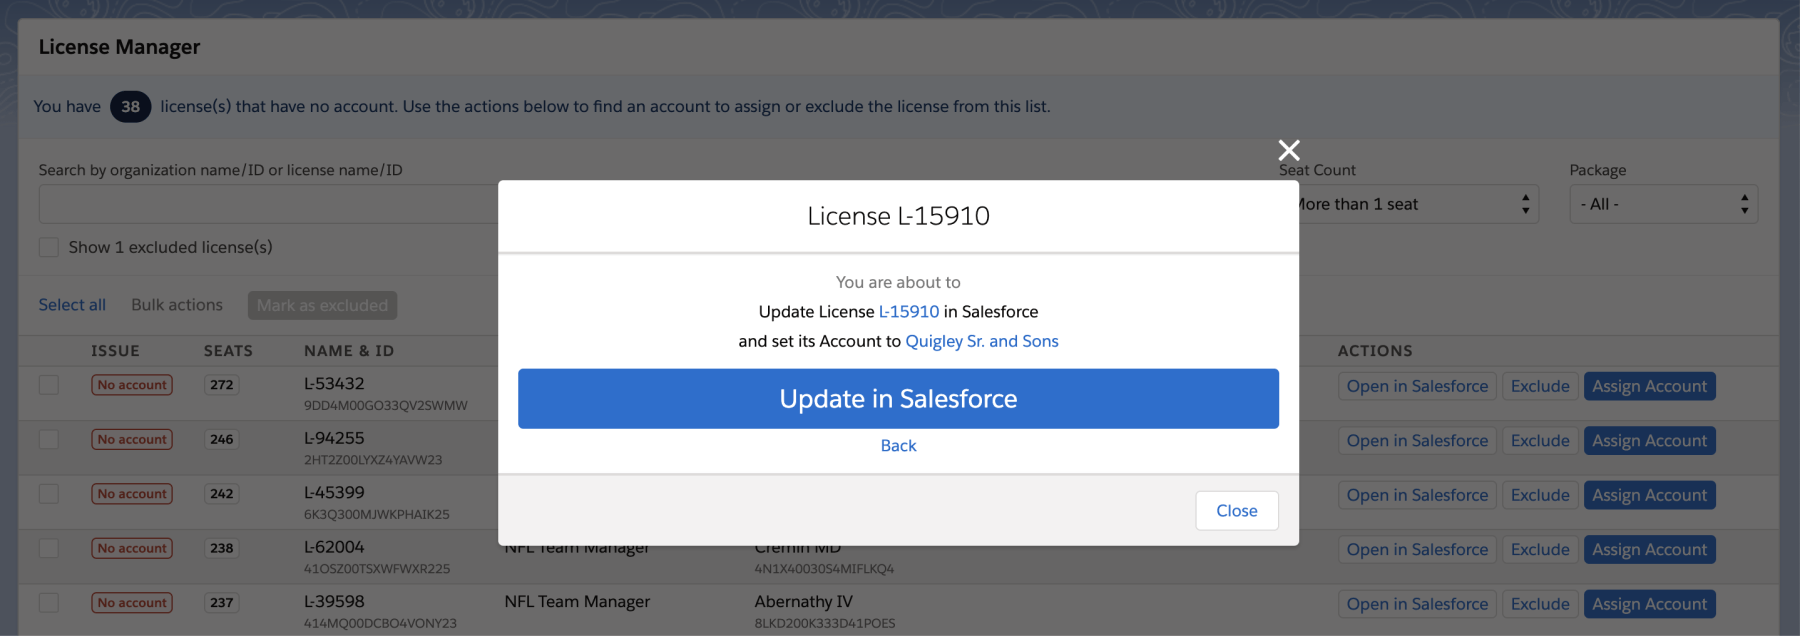 Update License in Salesforce